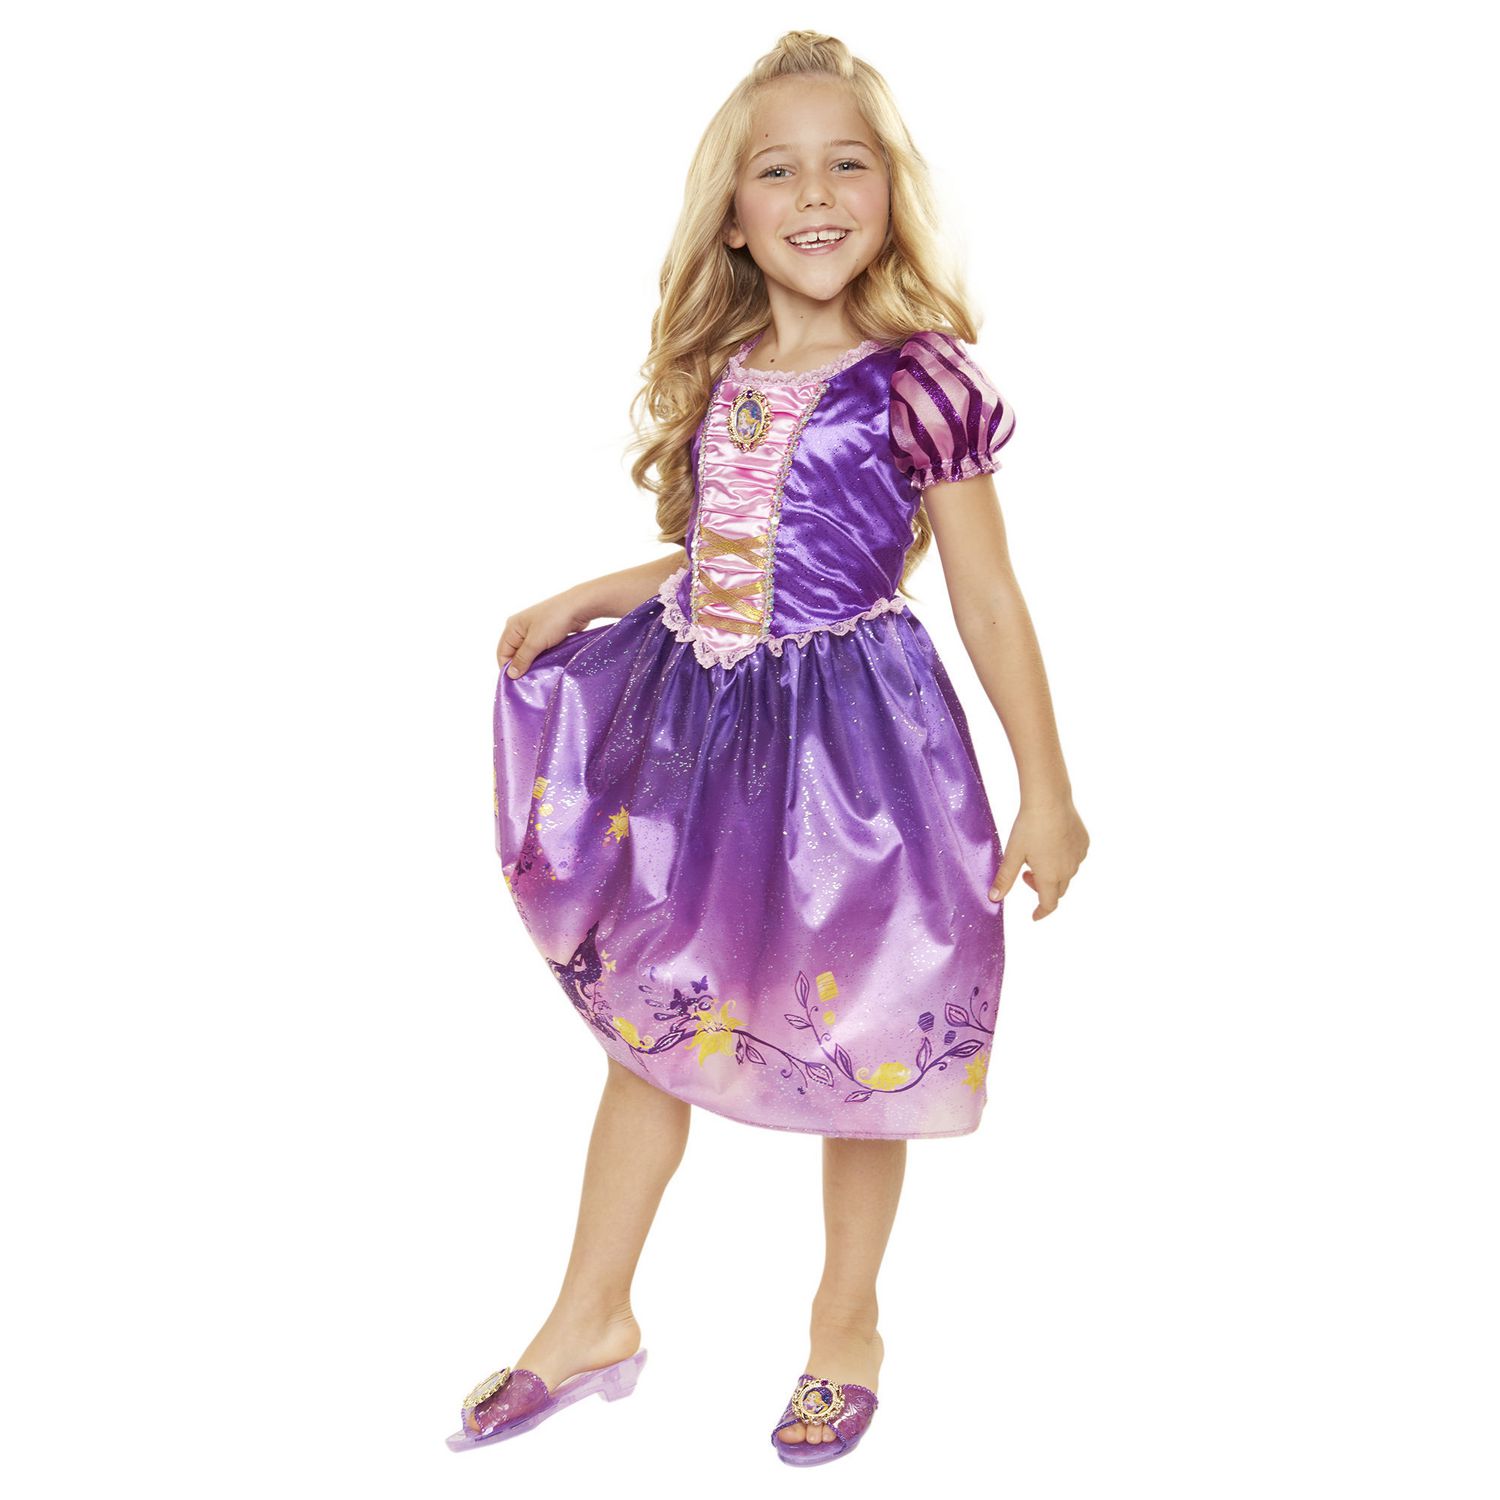 Rapunzel Costume Walmart | vlr.eng.br